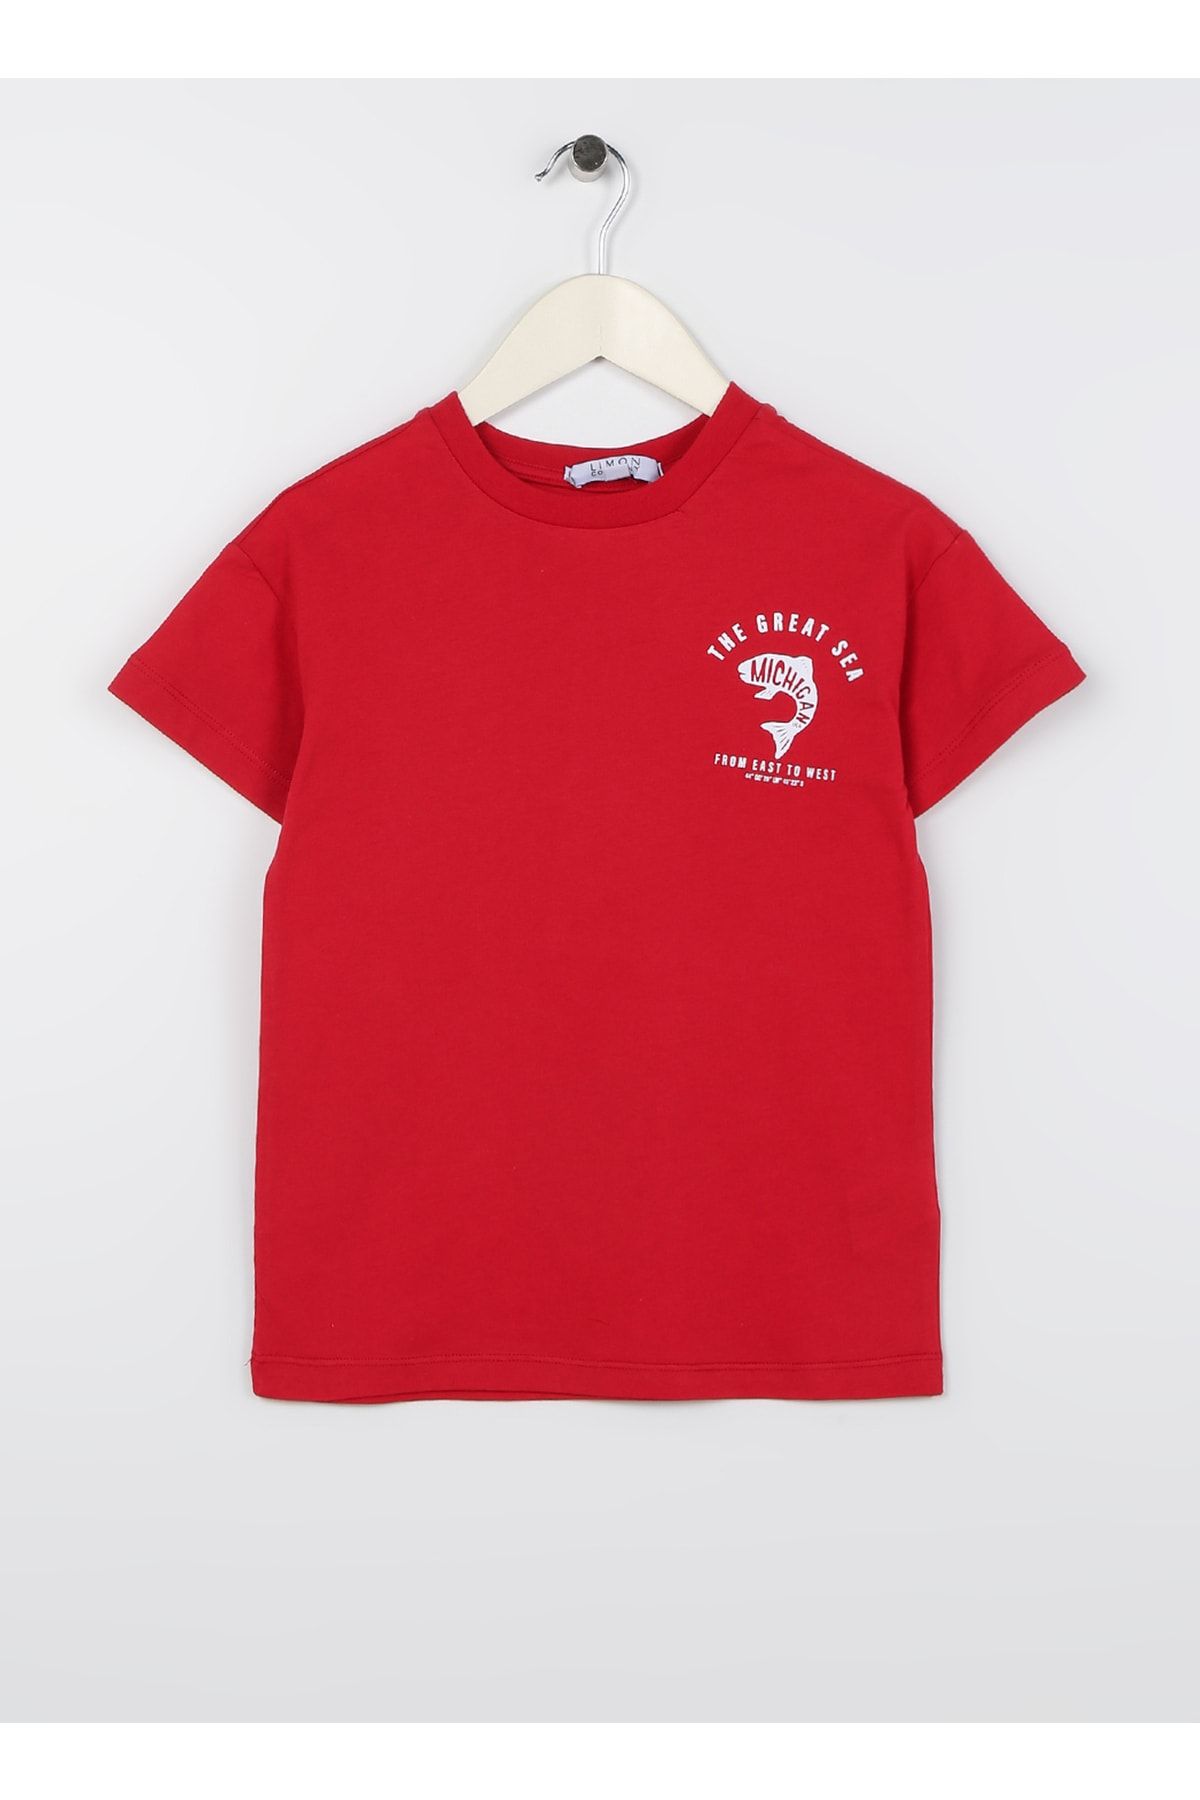 LİMON COMPANY Limon Baskılı Kırmızı Erkek Çocuk T-shirt Fısh Boy-23